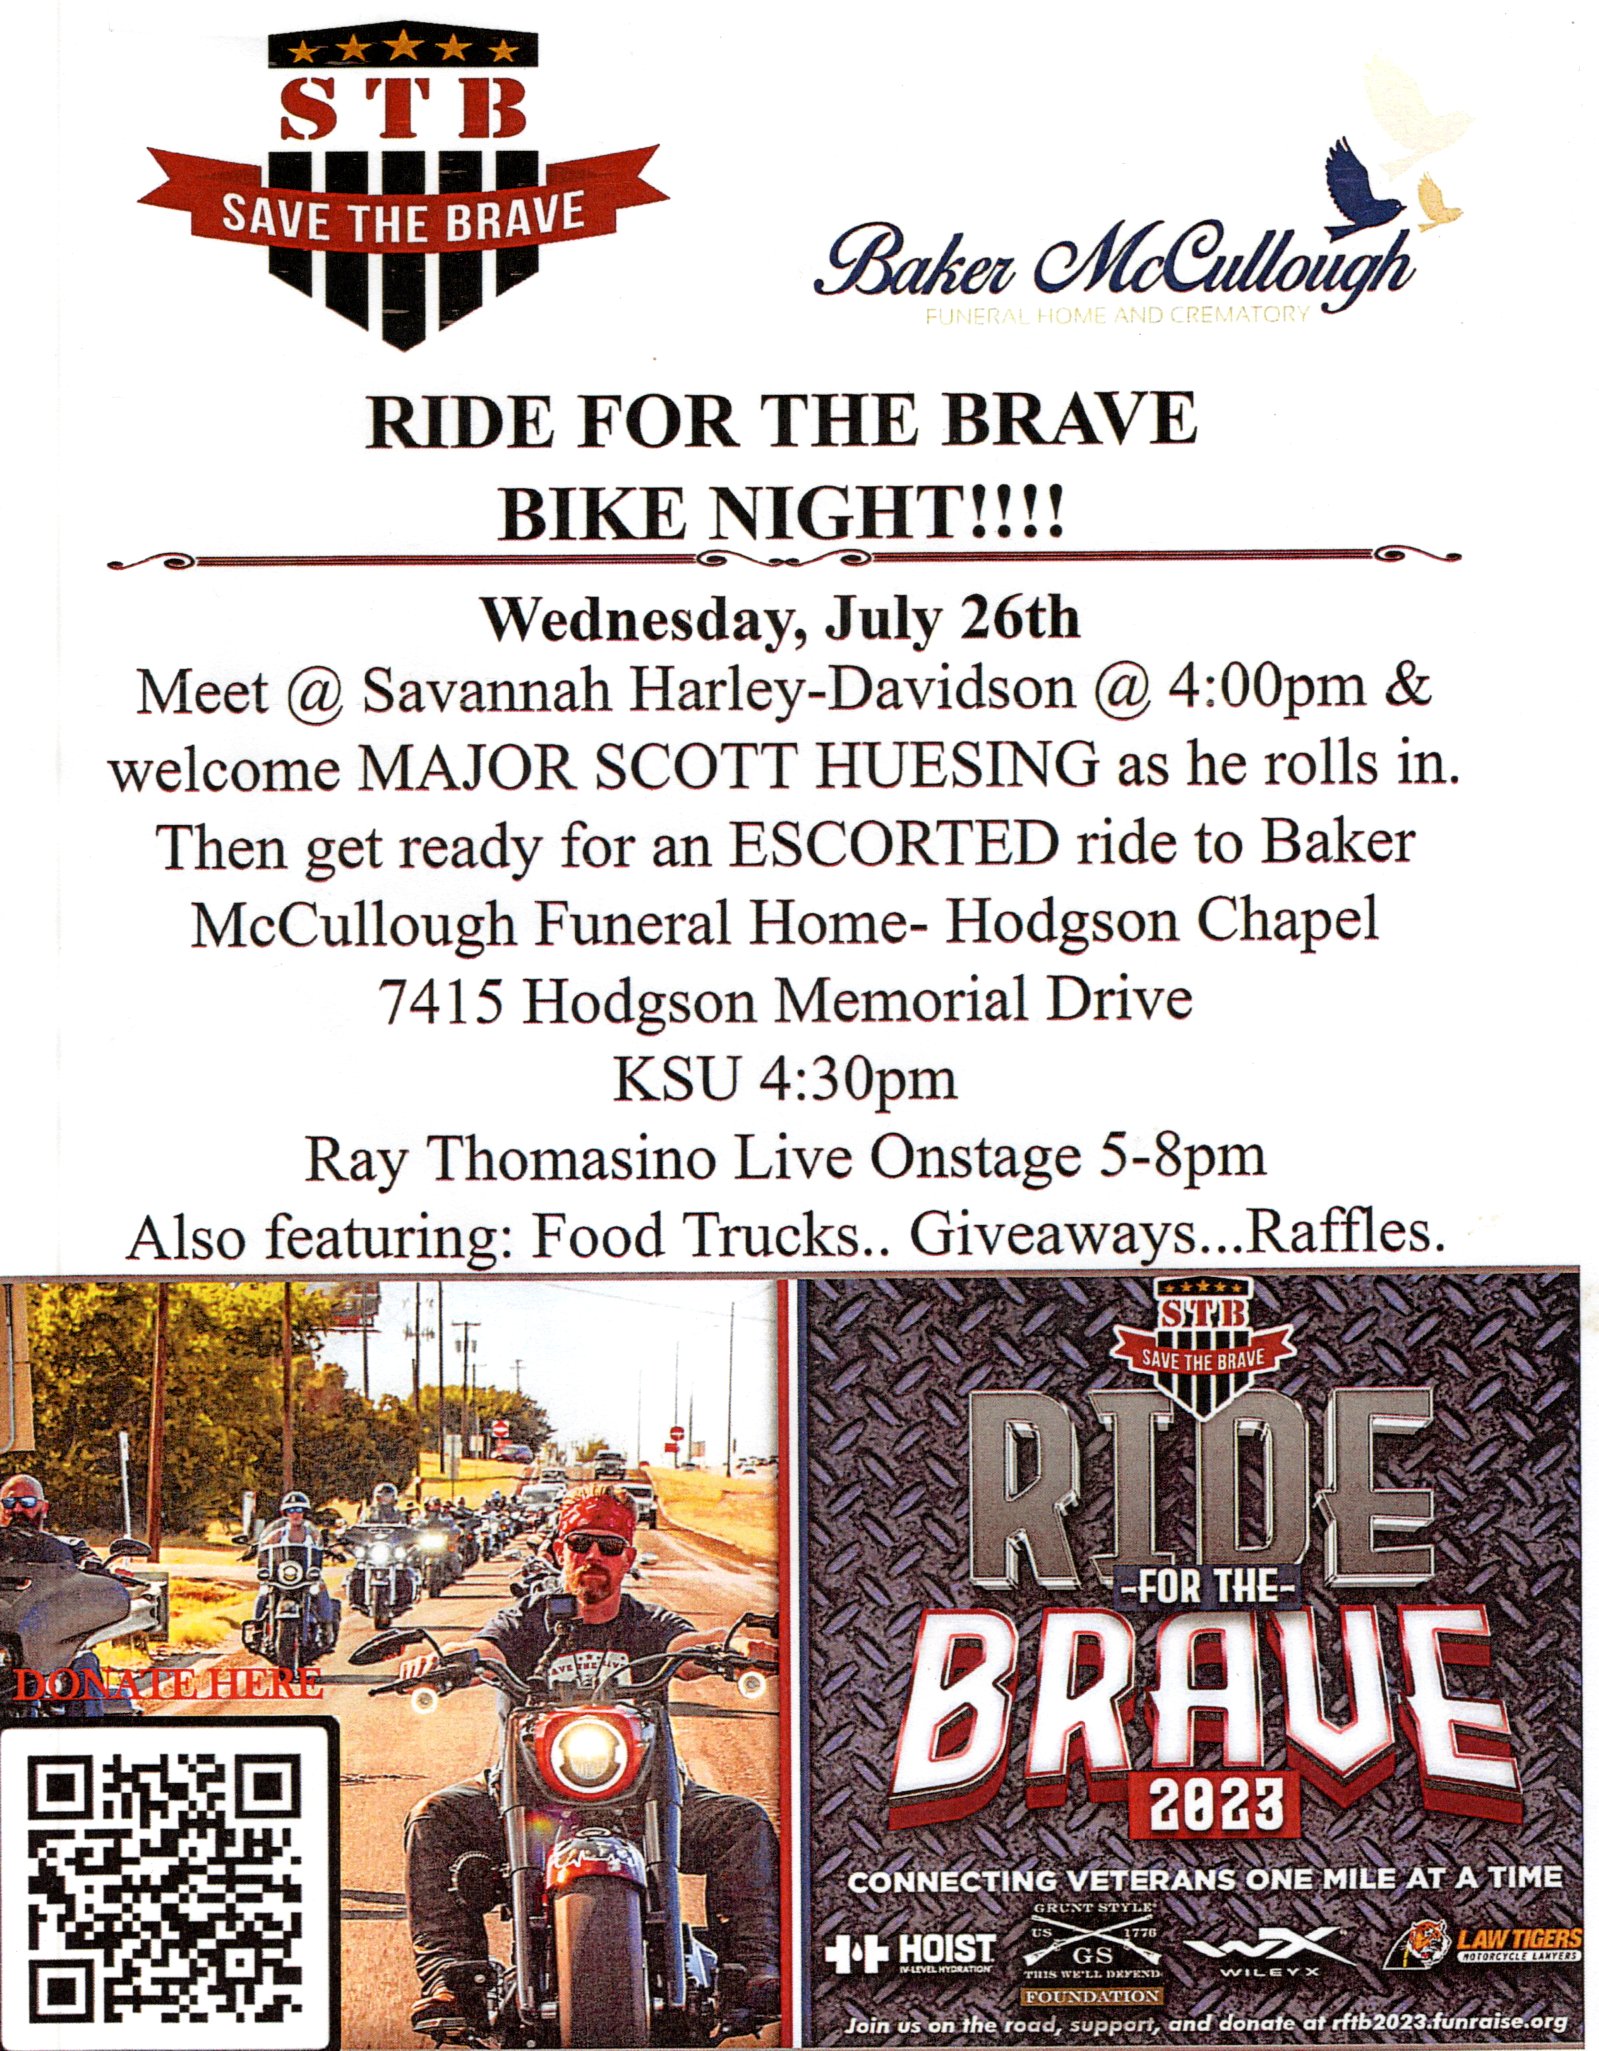 Ride for the Brave Bike Night @ Savannah Harley-Davidson | Savannah | Georgia | United States